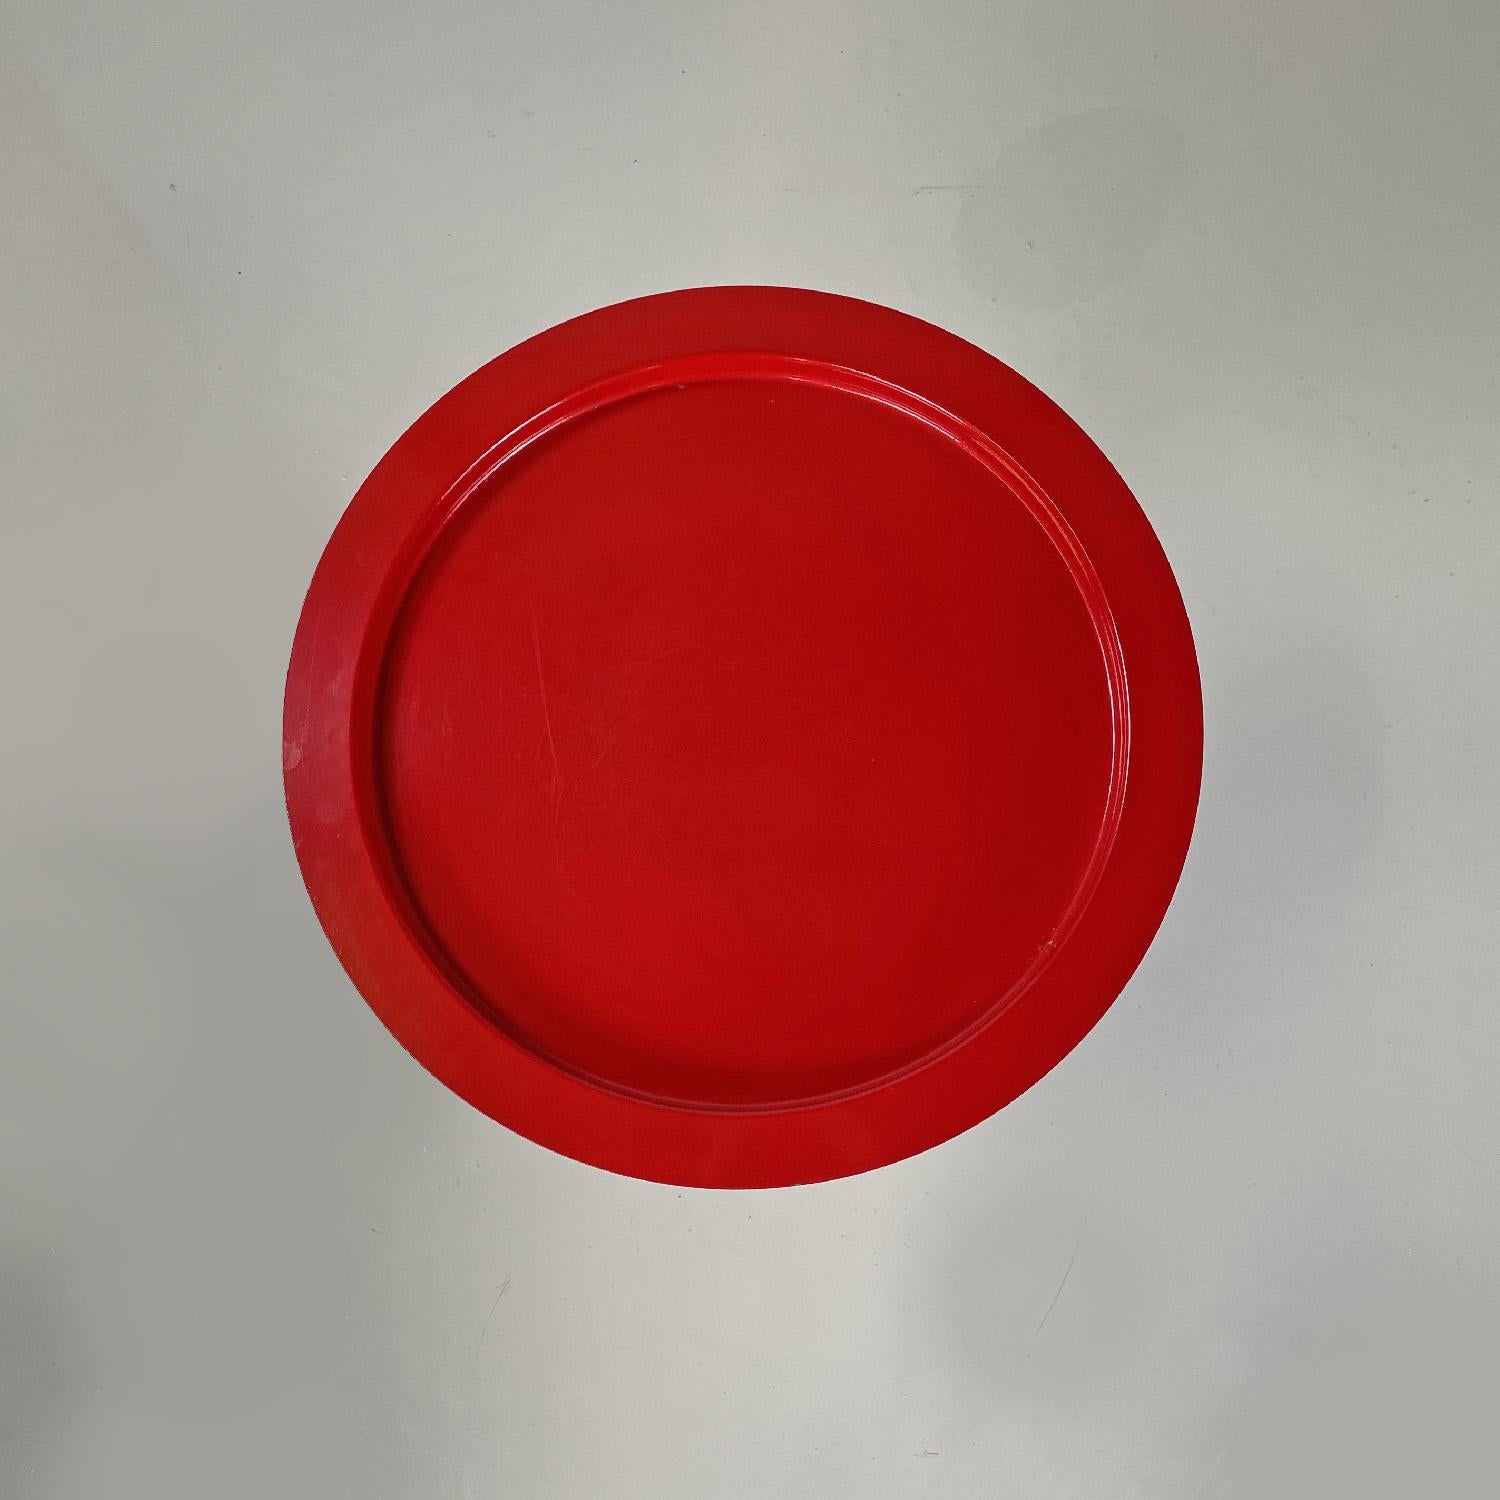 Moderner italienischer Couchtisch aus rot lackiertem Metall mit abnehmbarer Platte, 1980er Jahre 
Couchtisch mit runder Basis, komplett aus rot lackiertem Metall. Der runde Deckel ist abnehmbar und kann als Tablett dienen. Die Struktur ist